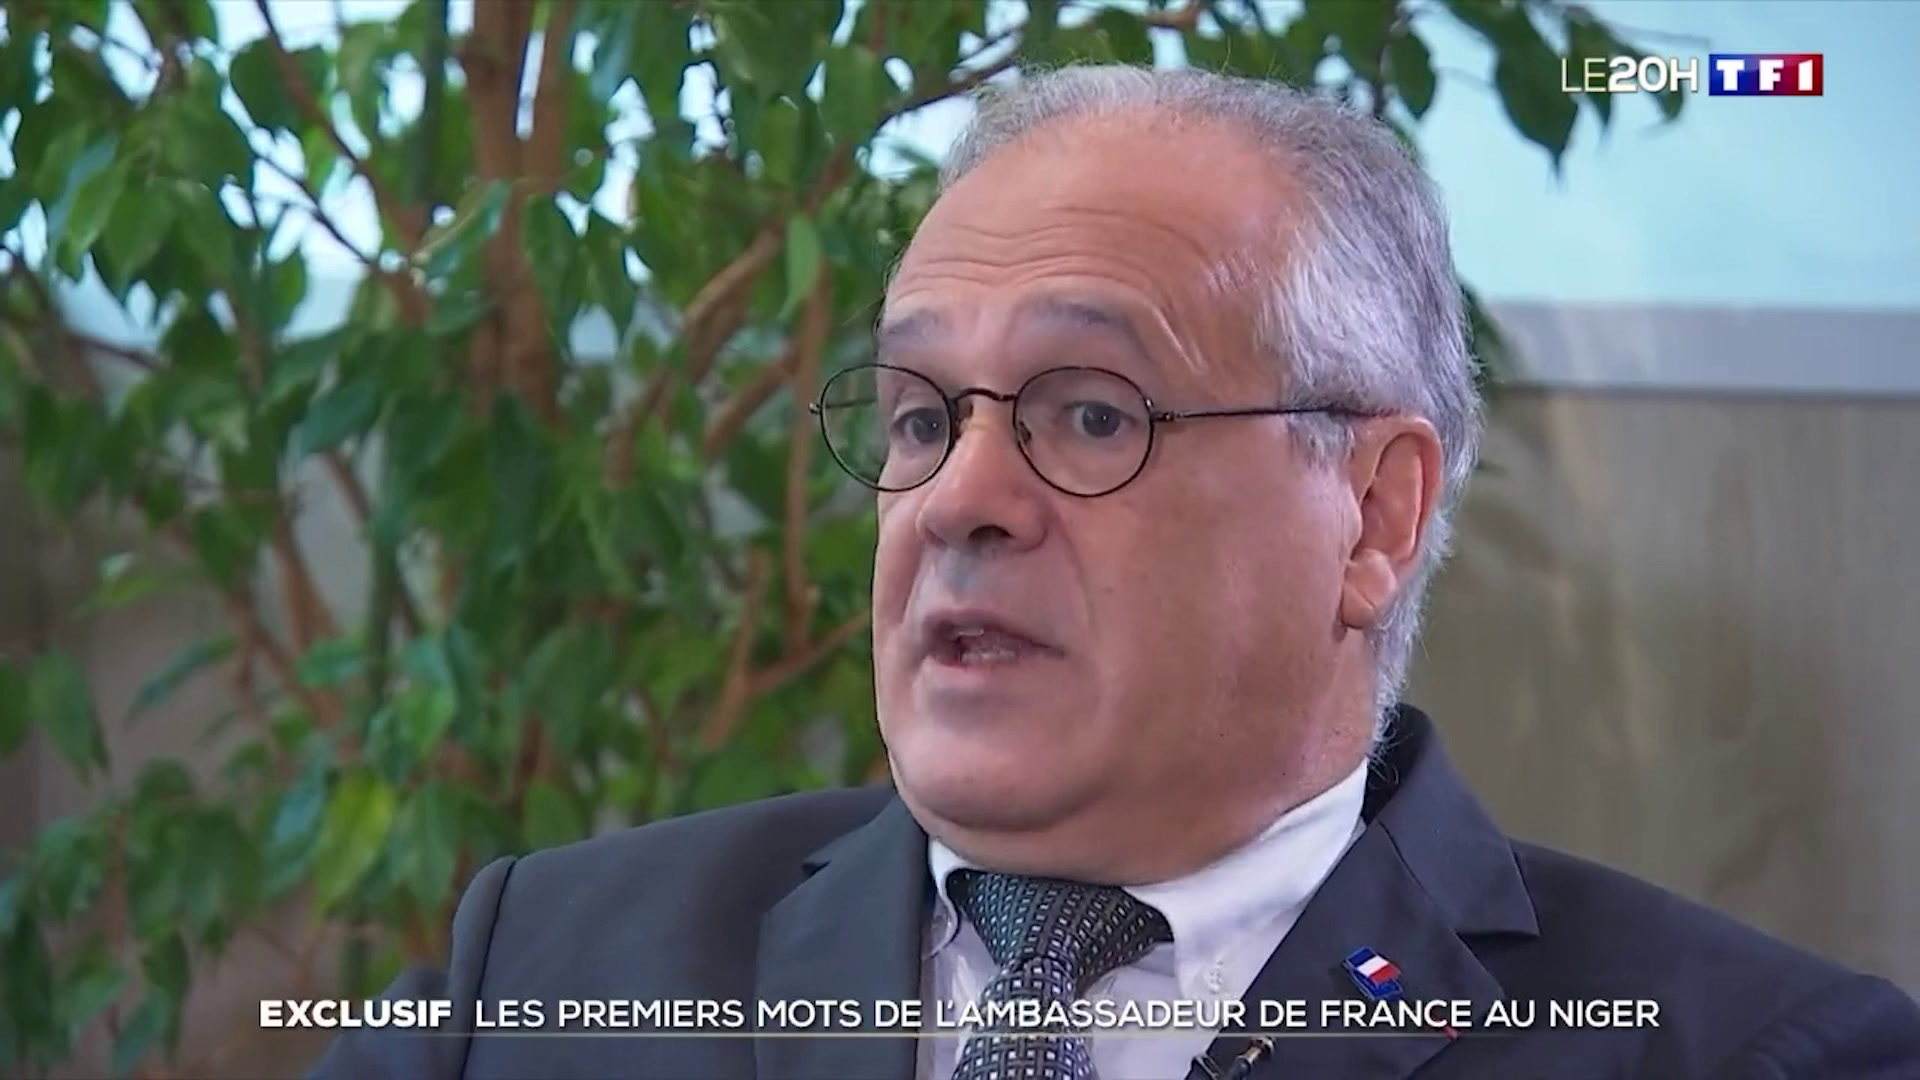 «L'objectif était de me faire craquer, et donc de me faire sortir», raconte l’ambassadeur de France chassé du Niger